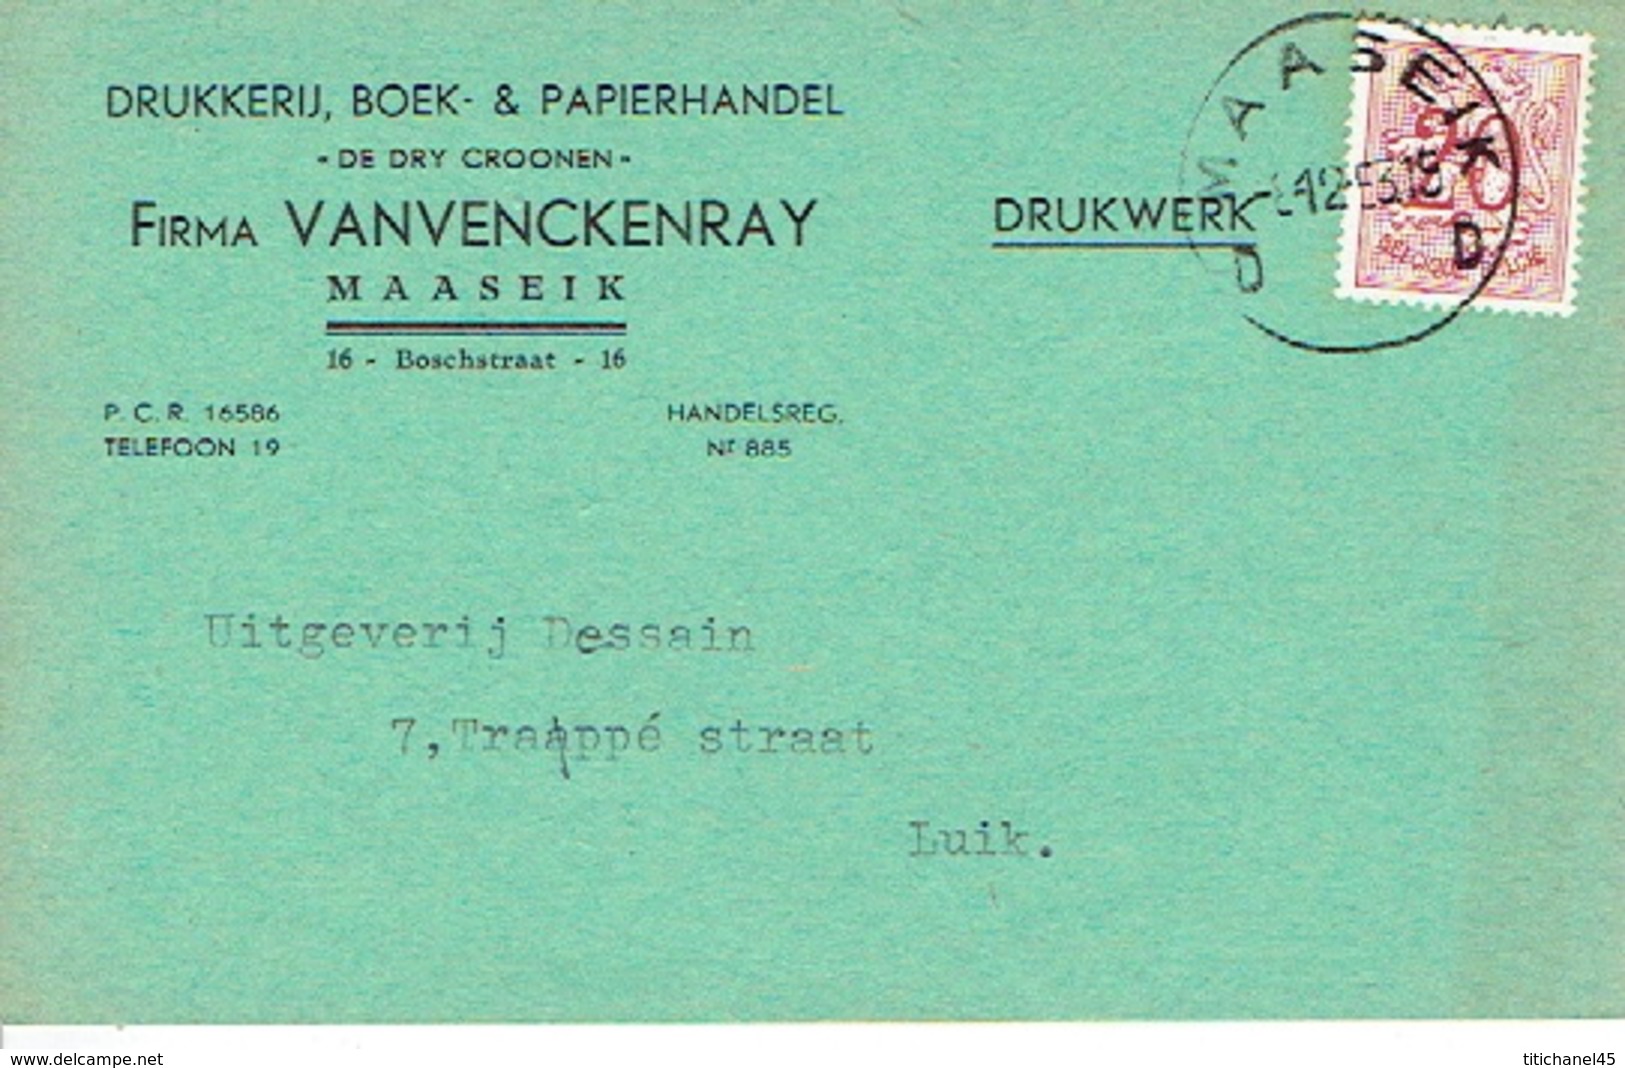 PK Publicitaire MAASEIK 1953 - Firma VANVENCKENRAY "IN DE DRY CRONEN" - Drukkerij, Boek- & Papierhandel Te MAASEIK - Maaseik